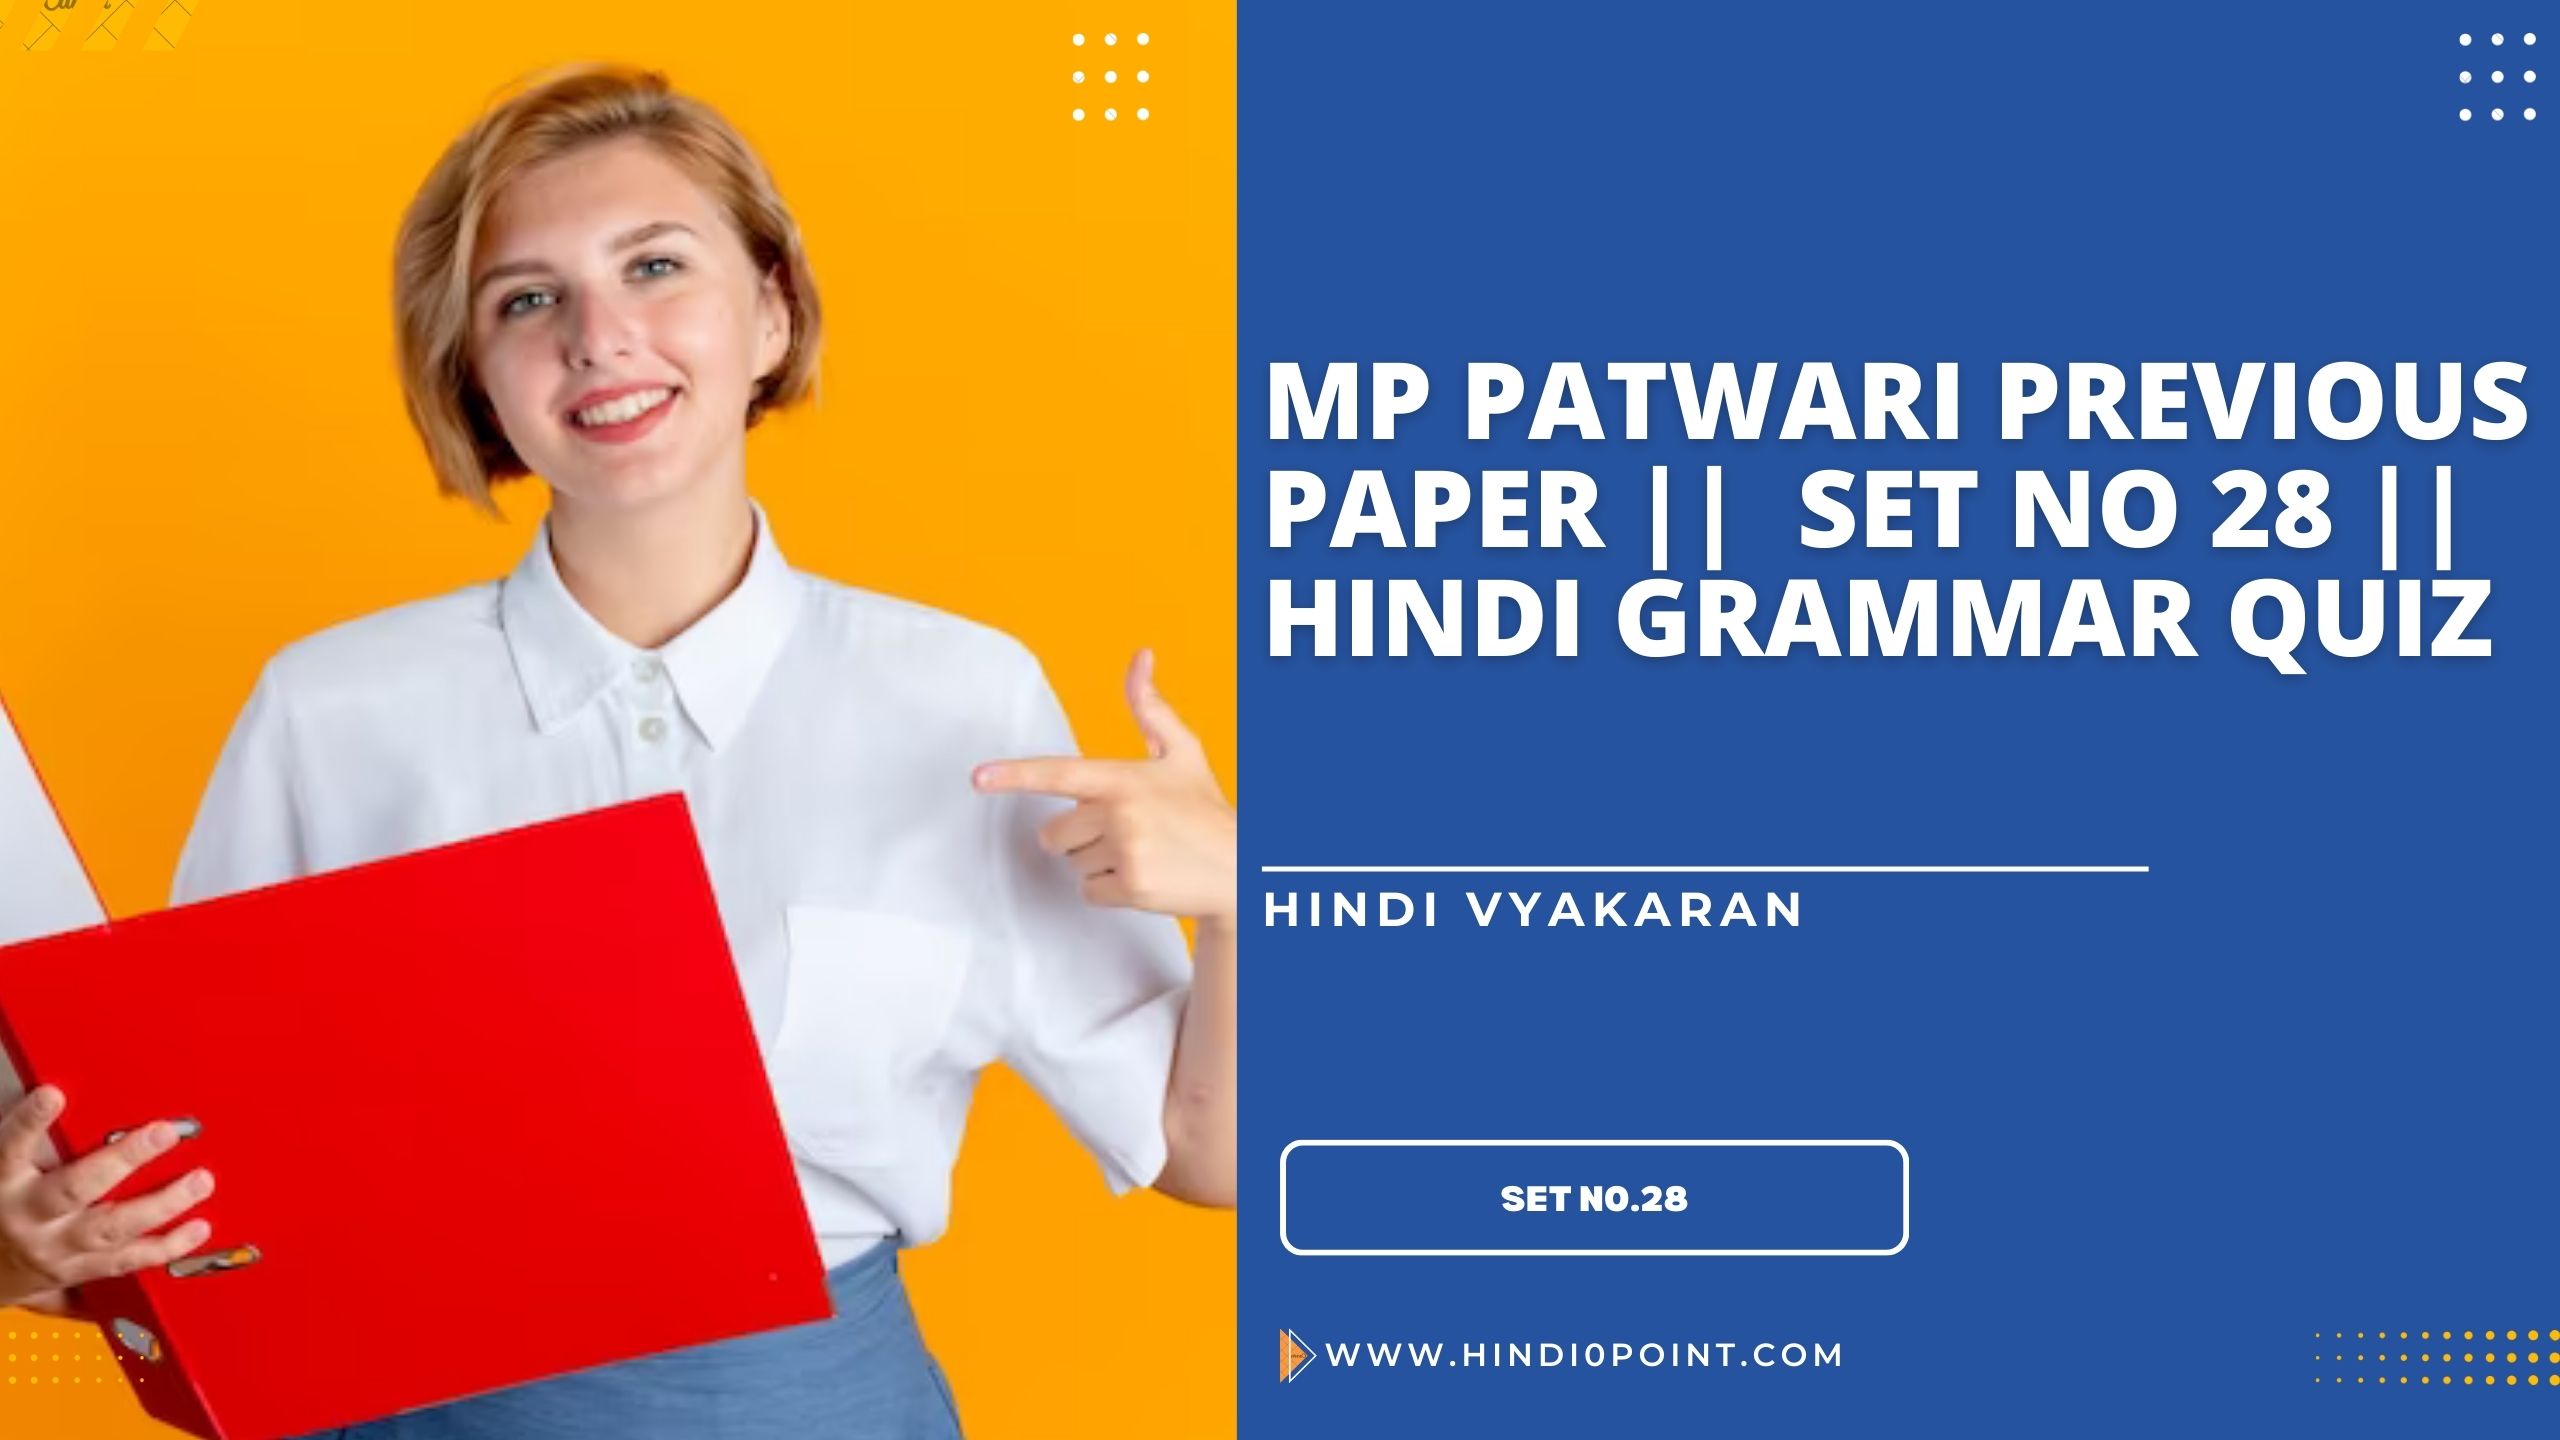 Mp patwari previous paper || set no 28 || hindi grammar quiz